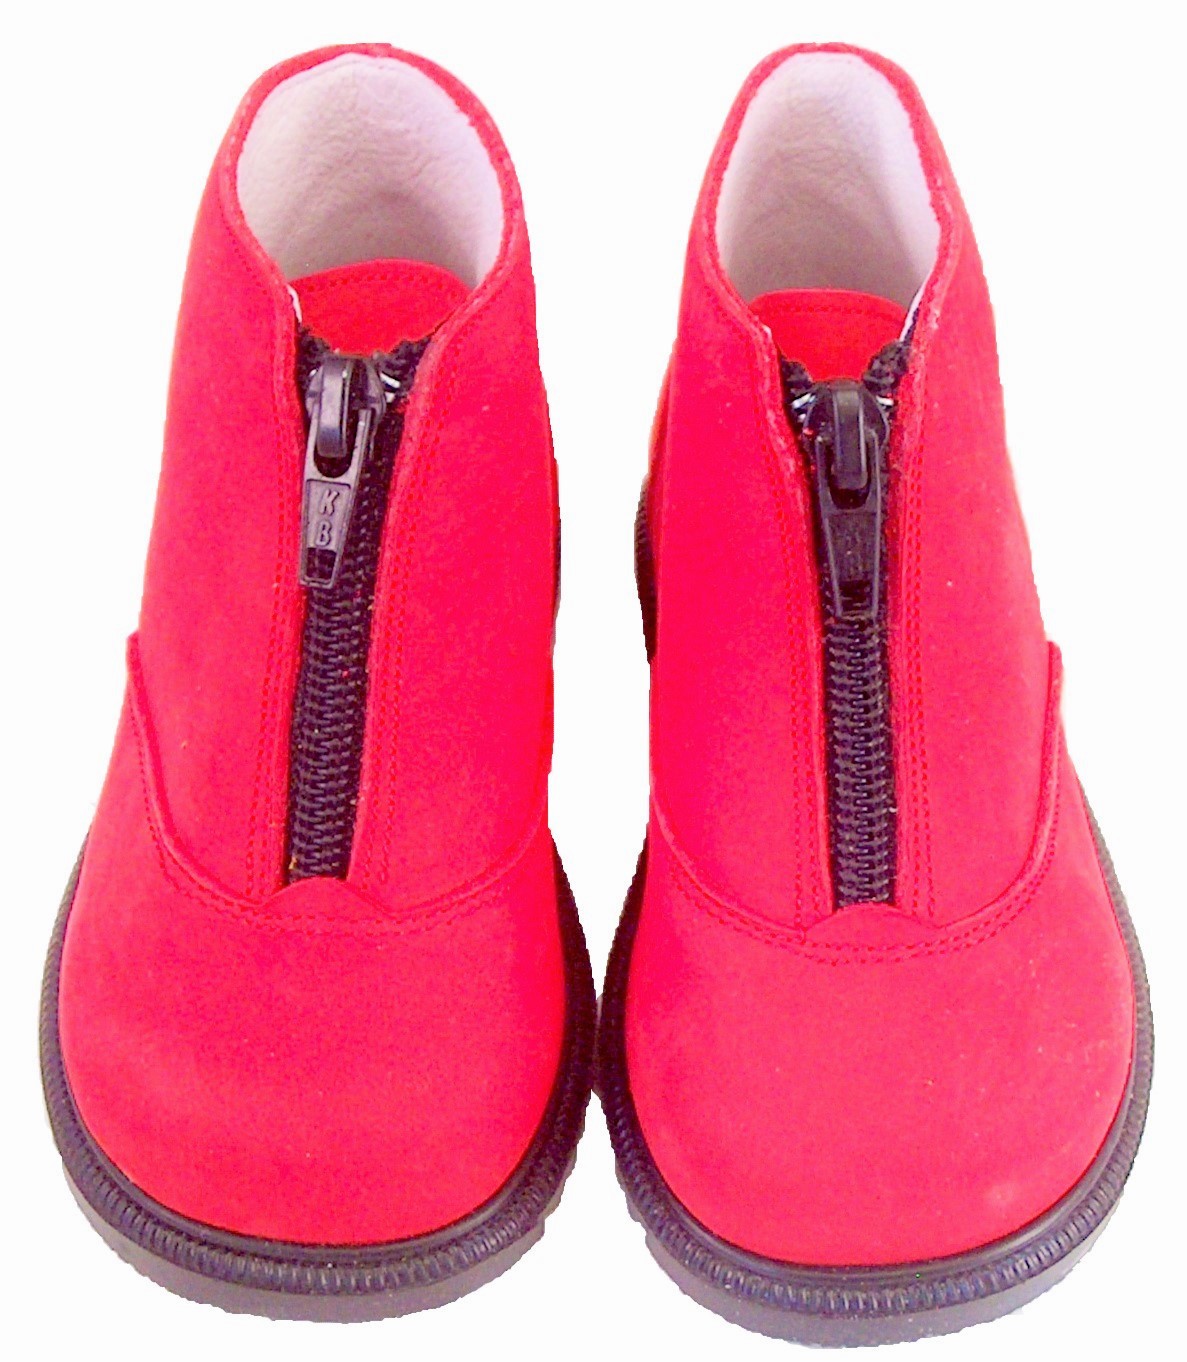 S-6733 - Red Nubuck Zipper Boots